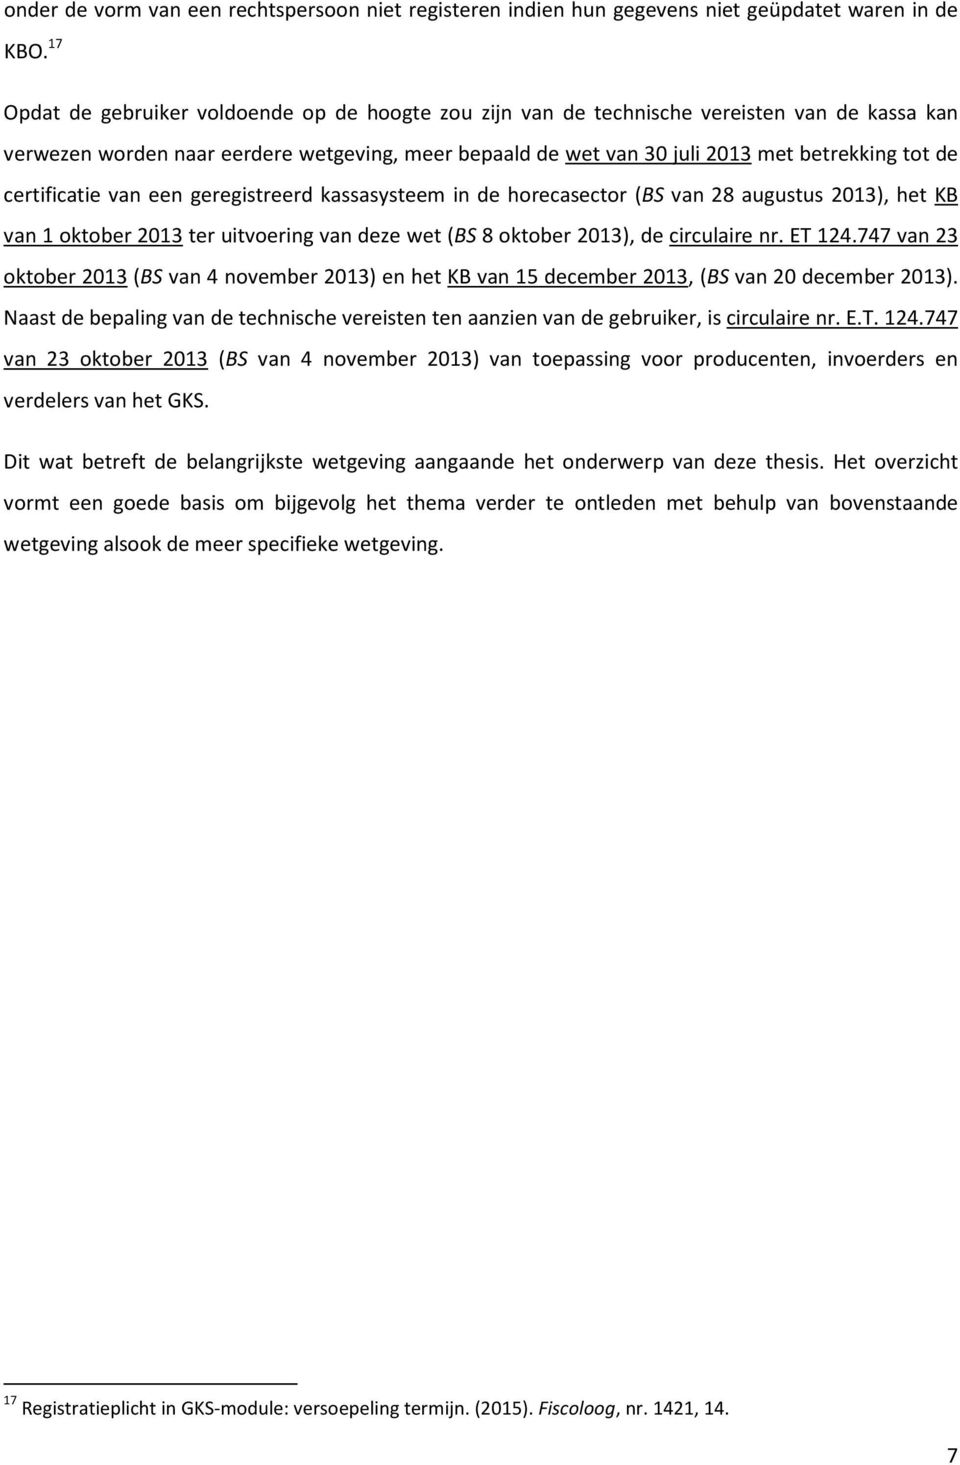 certificatie van een geregistreerd kassasysteem in de horecasector (BS van 28 augustus 2013), het KB van 1 oktober 2013 ter uitvoering van deze wet (BS 8 oktober 2013), de circulaire nr. ET 124.